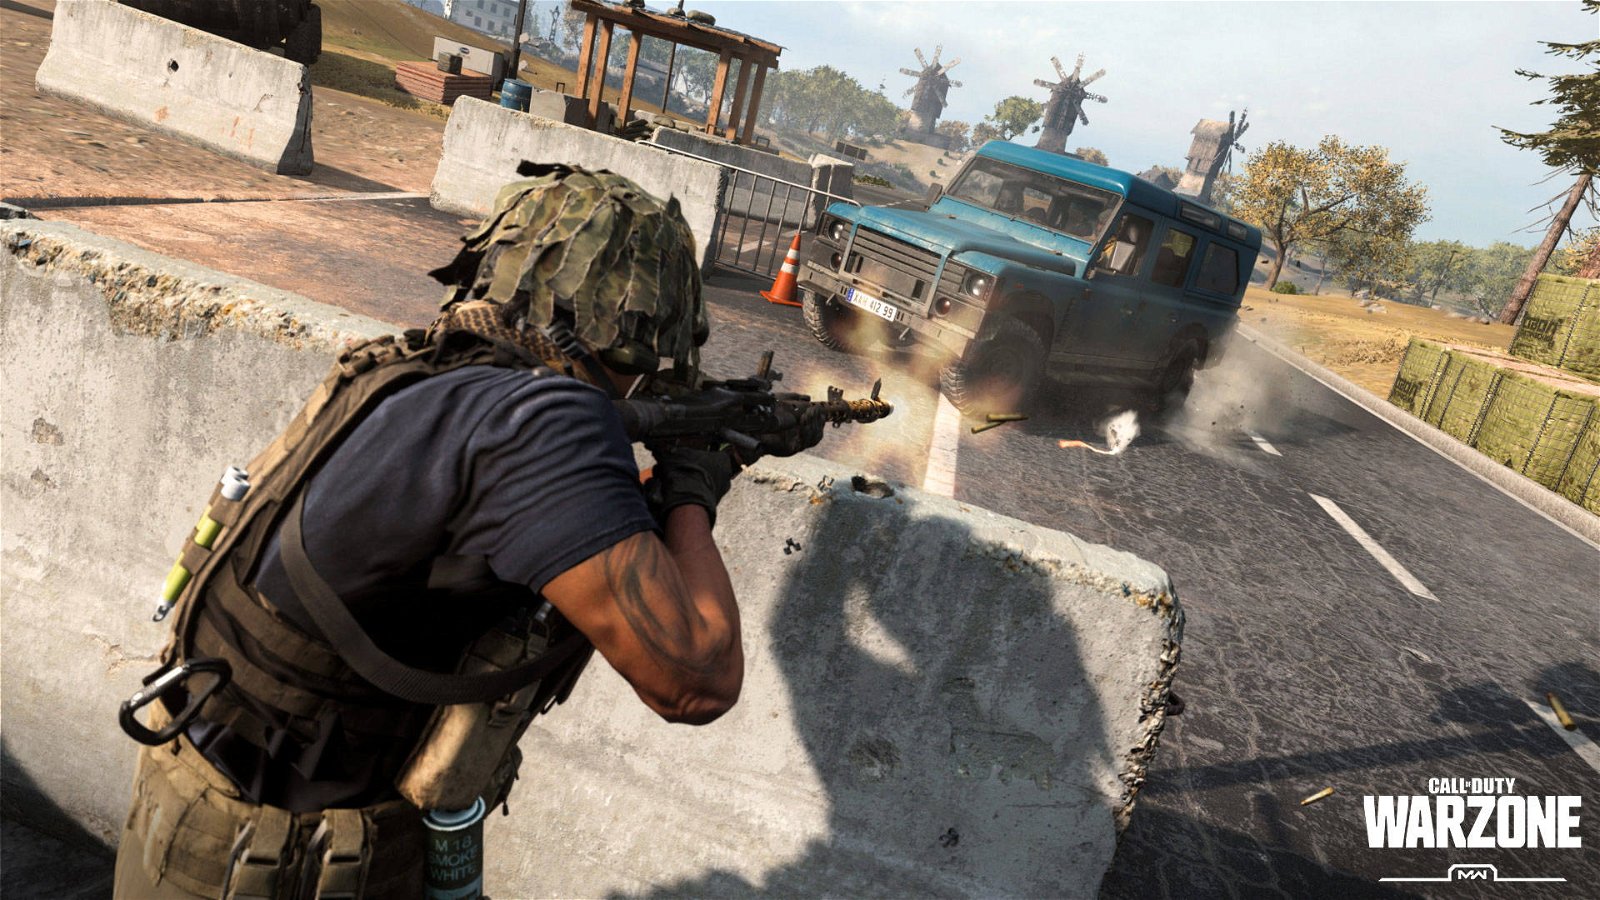 Immagine di Call of Duty Warzone diventerà più popolare di Fortnite, stando a un'analisi